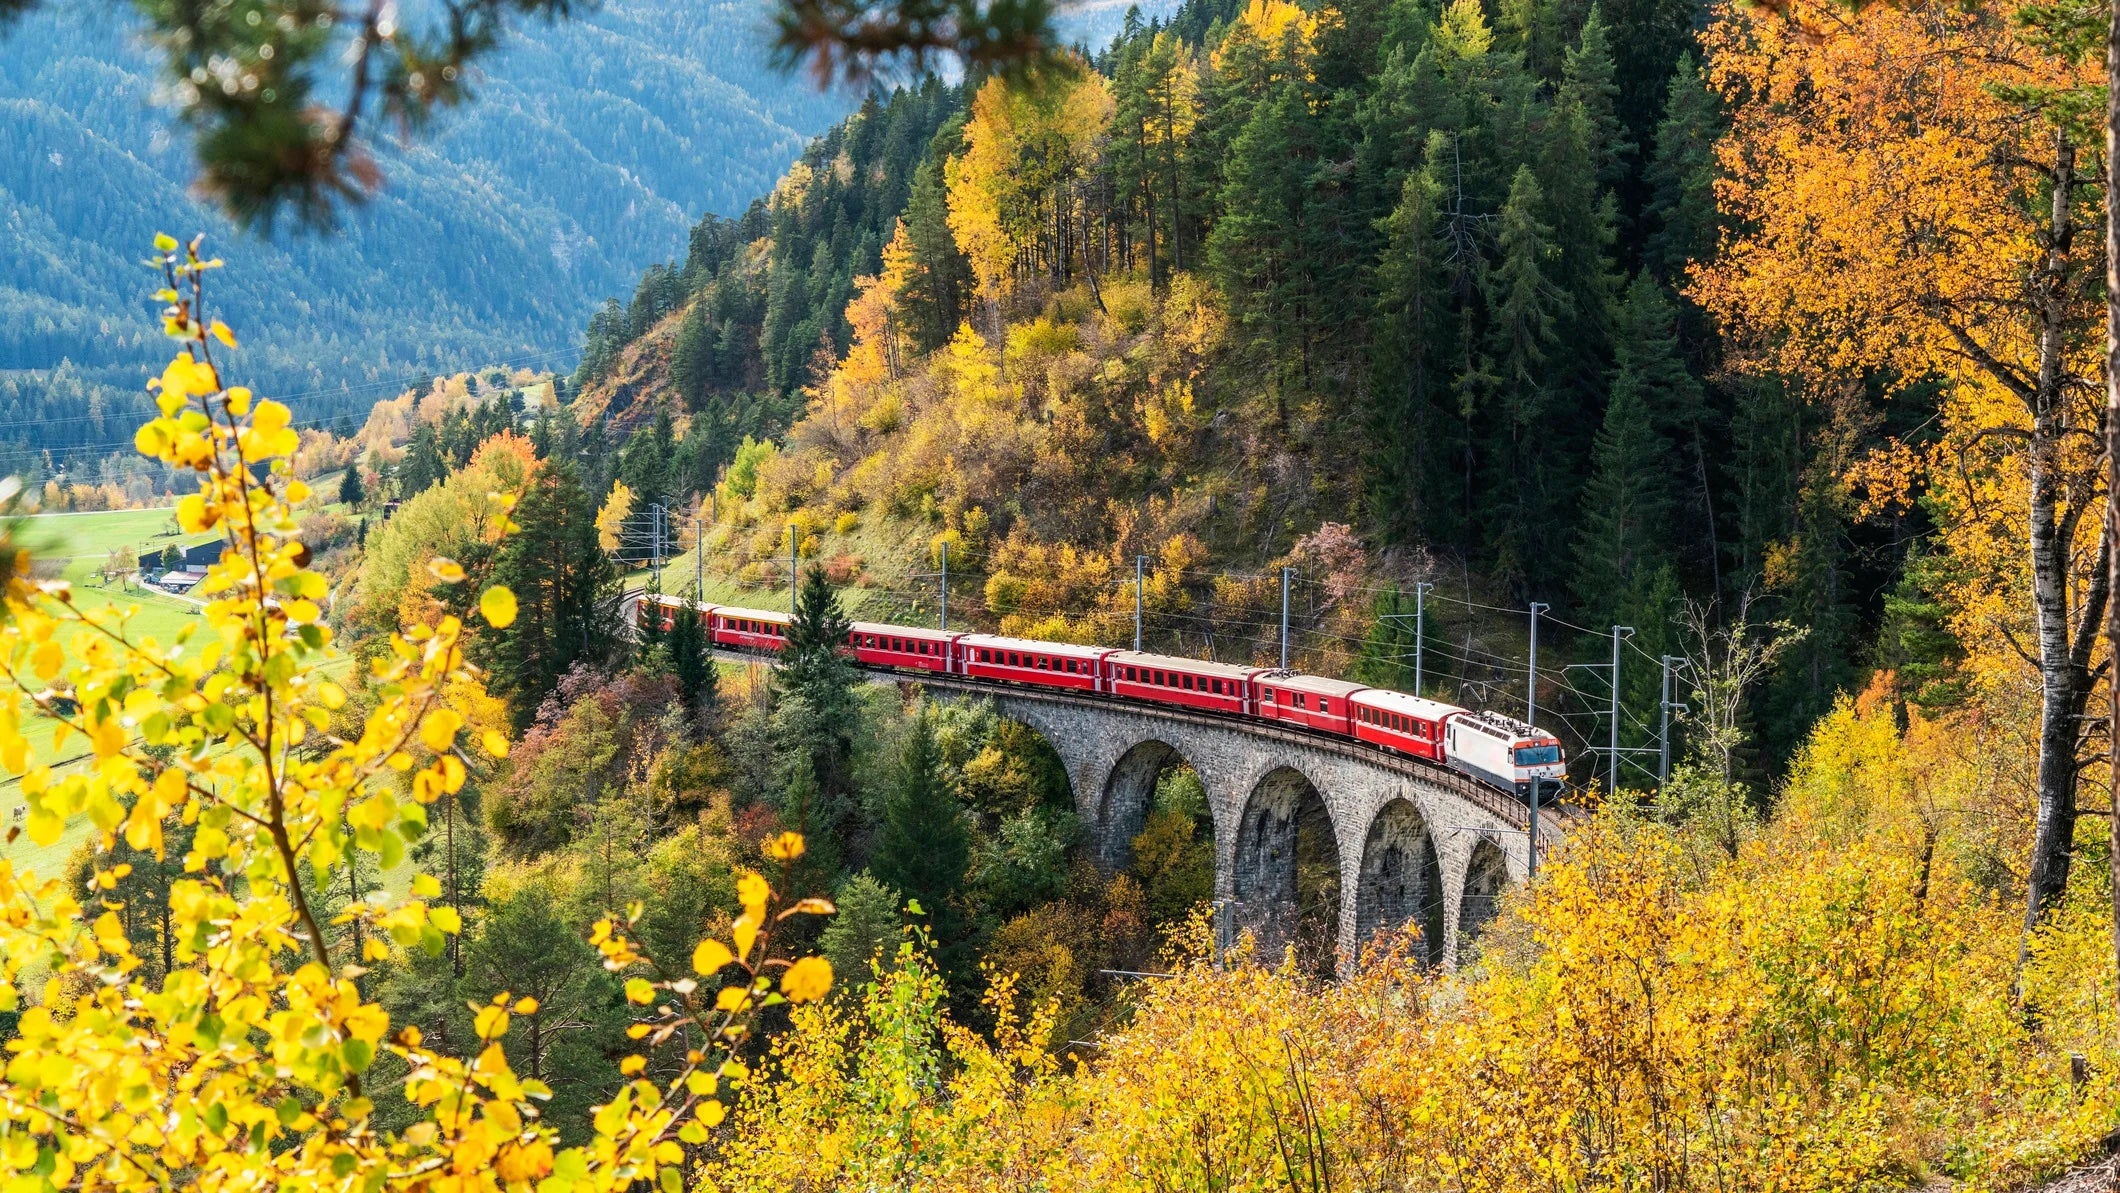 Bernina Express train in autumn, Filisur, Switzerland